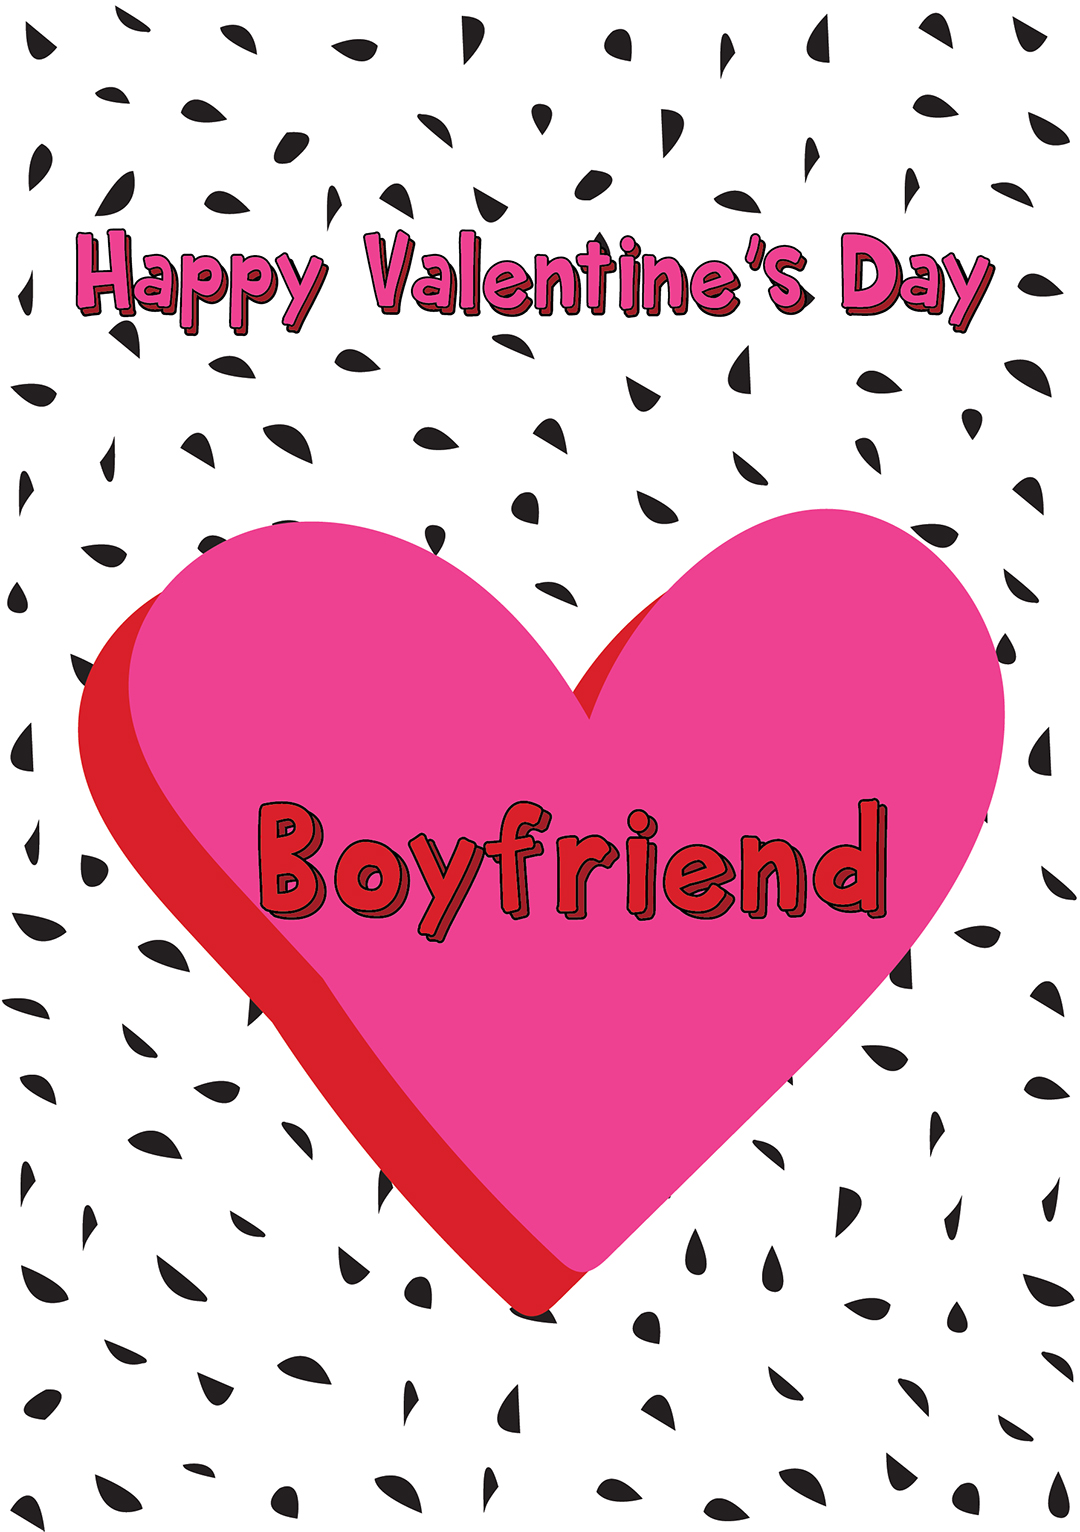 Boyfriend - Valentine's Day Card